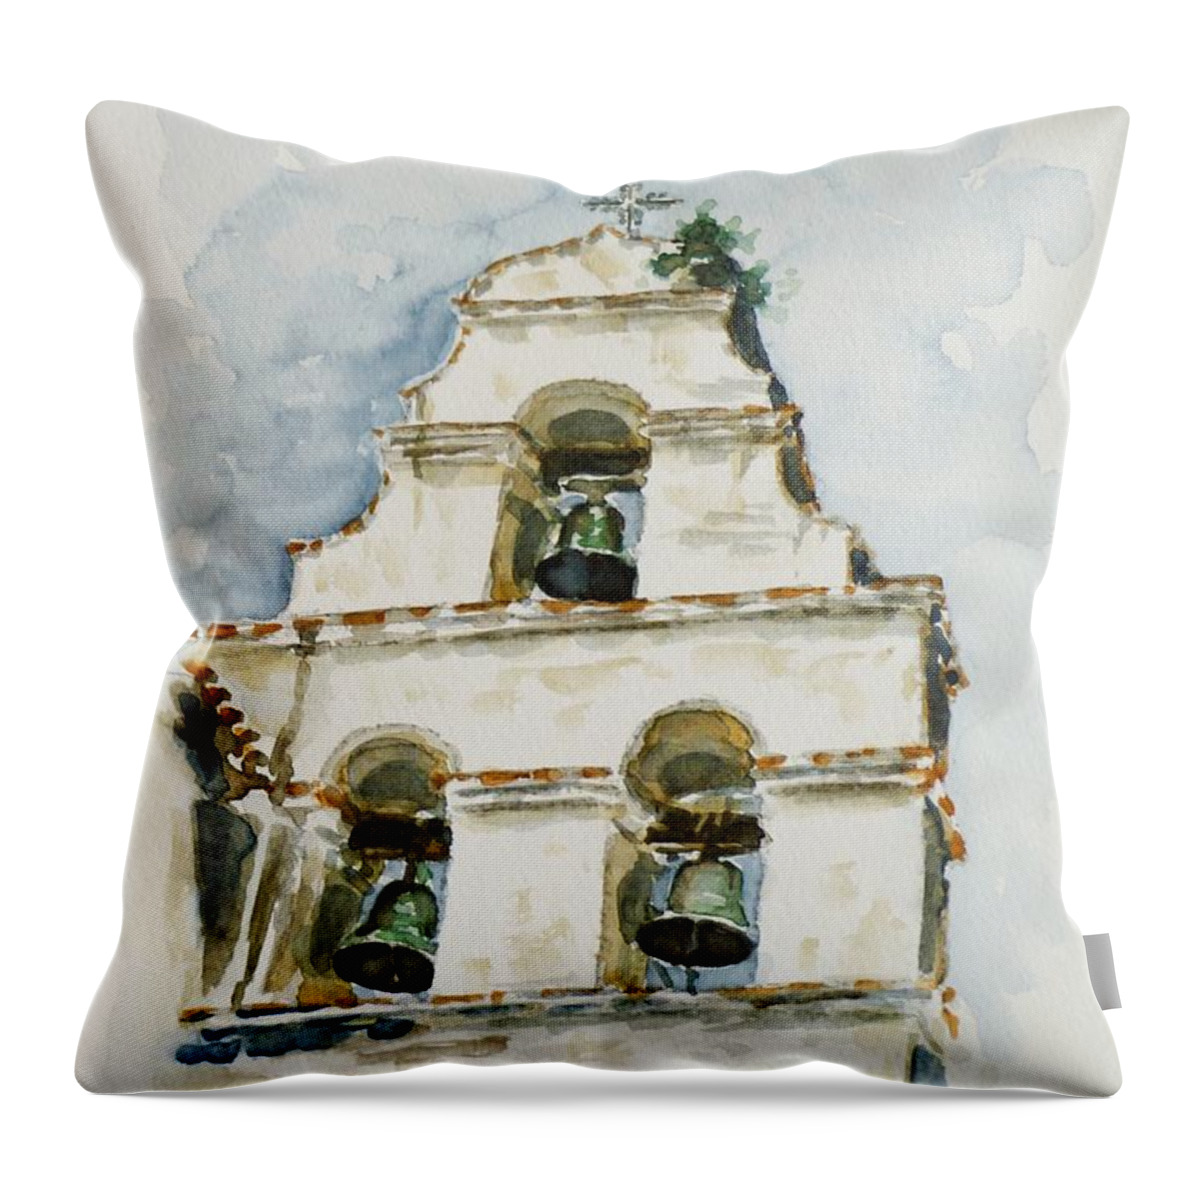 Three-bell Campanario Throw Pillow featuring the painting The Three-bell Campanario at Mission San Juan Bautista by Zaira Dzhaubaeva